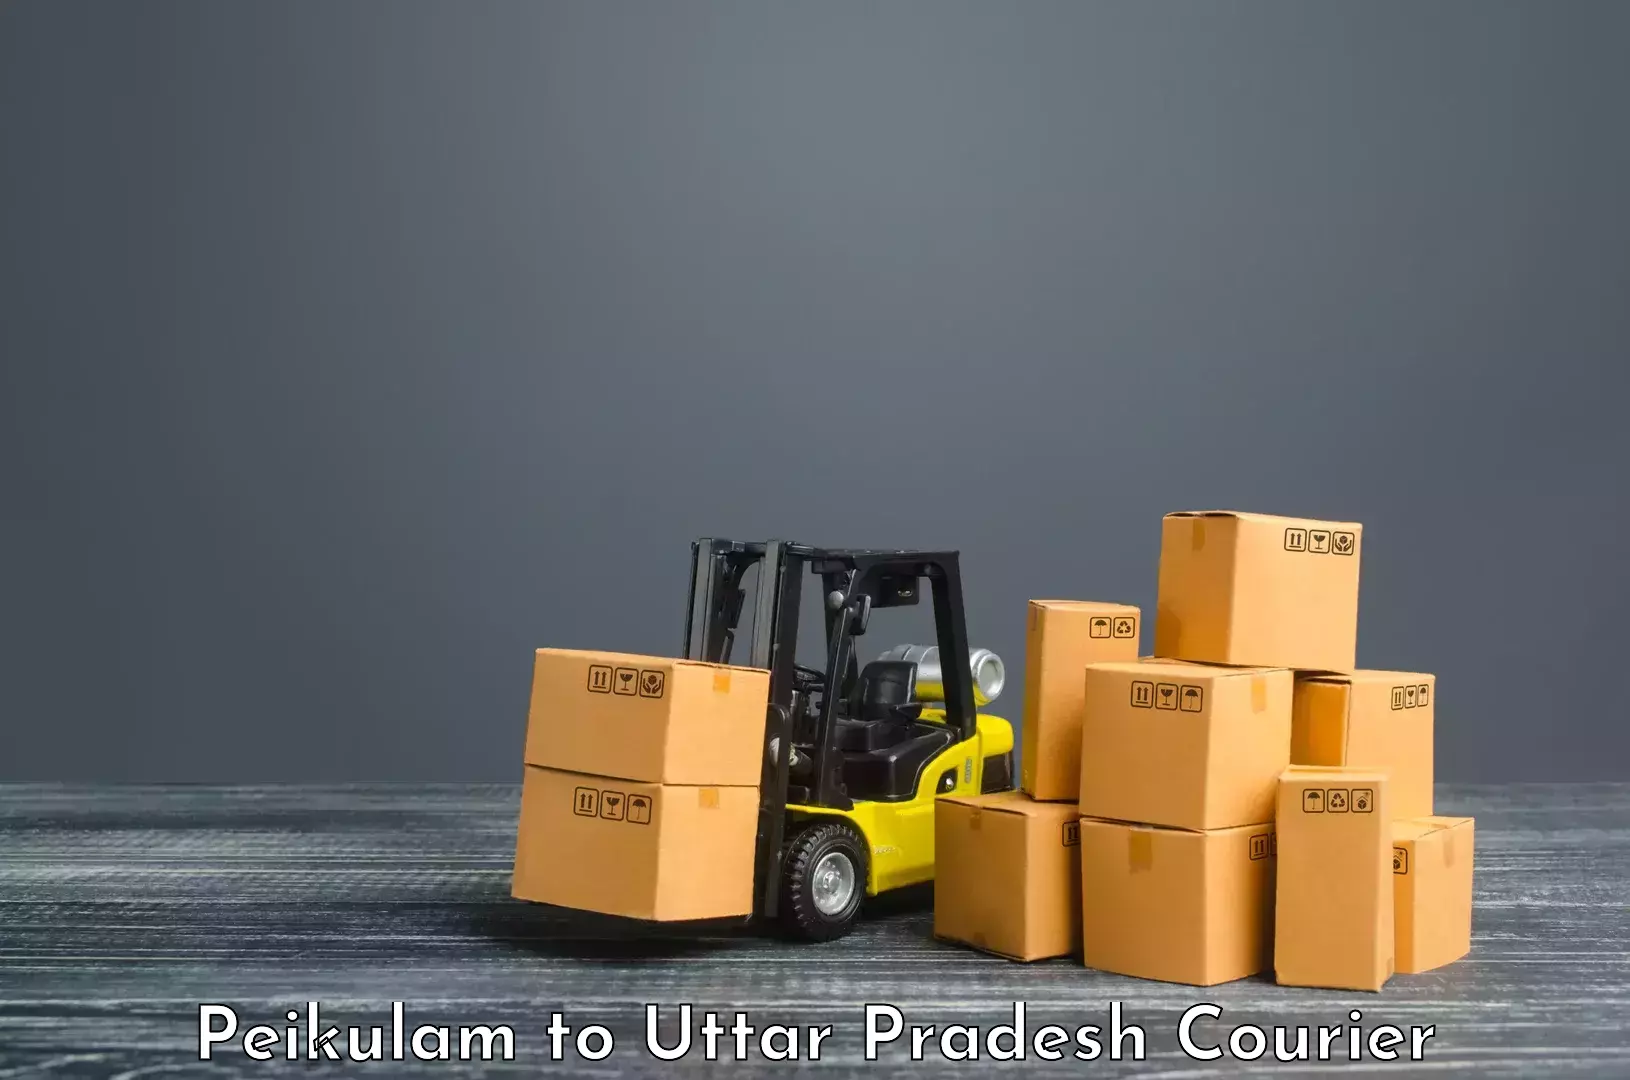 Bulk shipment Peikulam to Uttar Pradesh